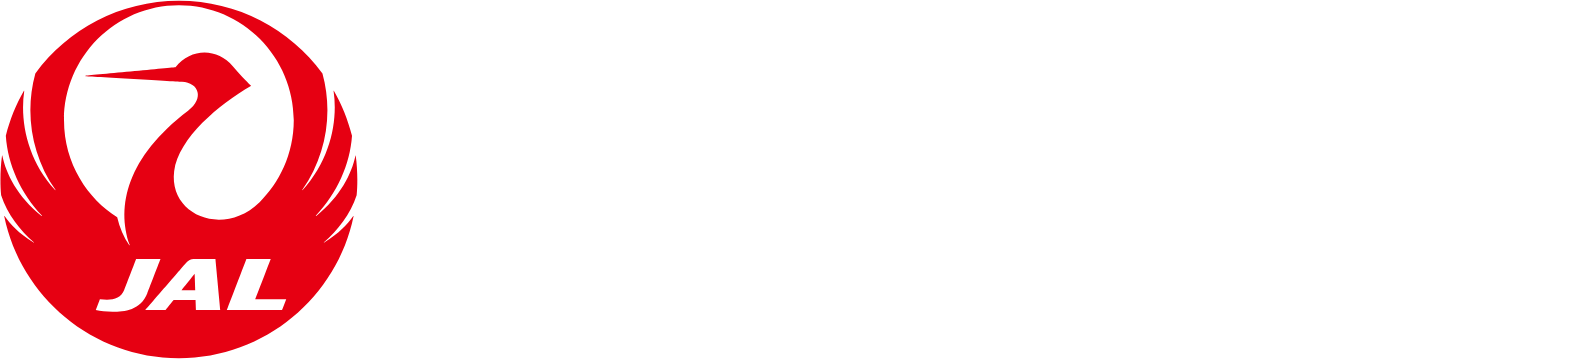 Japan Airlines
 logo grand pour les fonds sombres (PNG transparent)